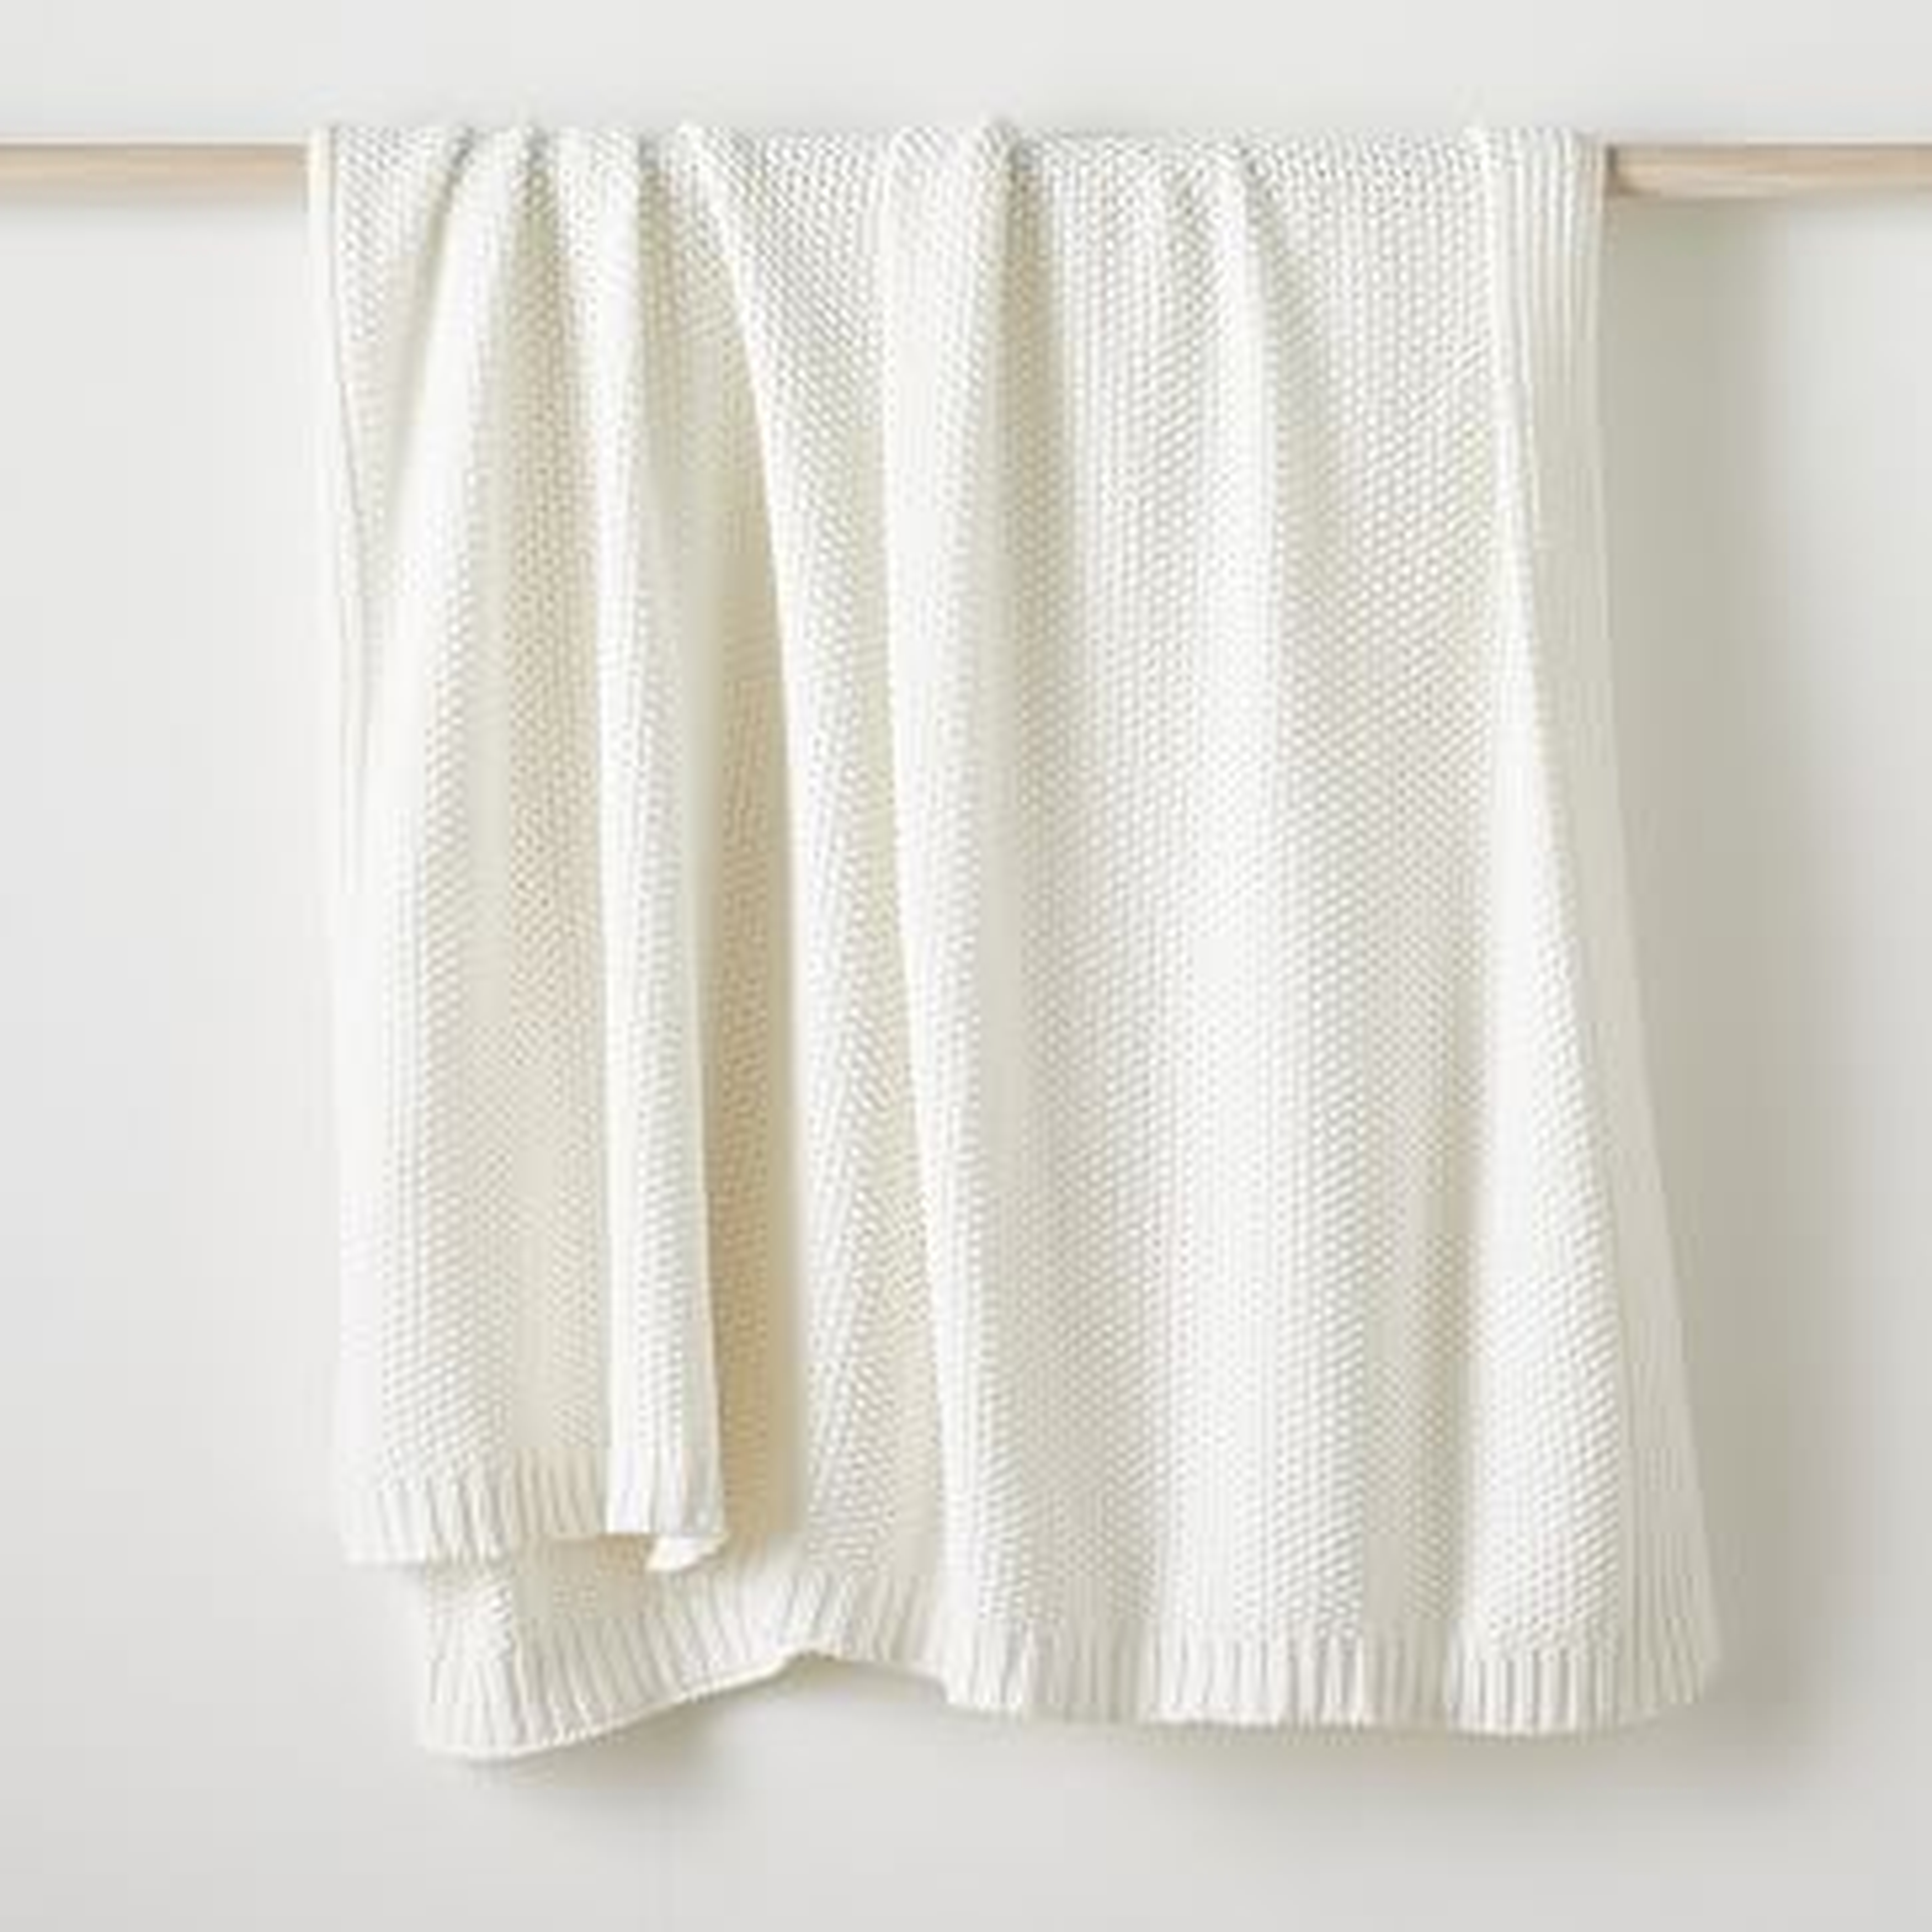 Cotton Knit Throw, 60"x80", White - West Elm